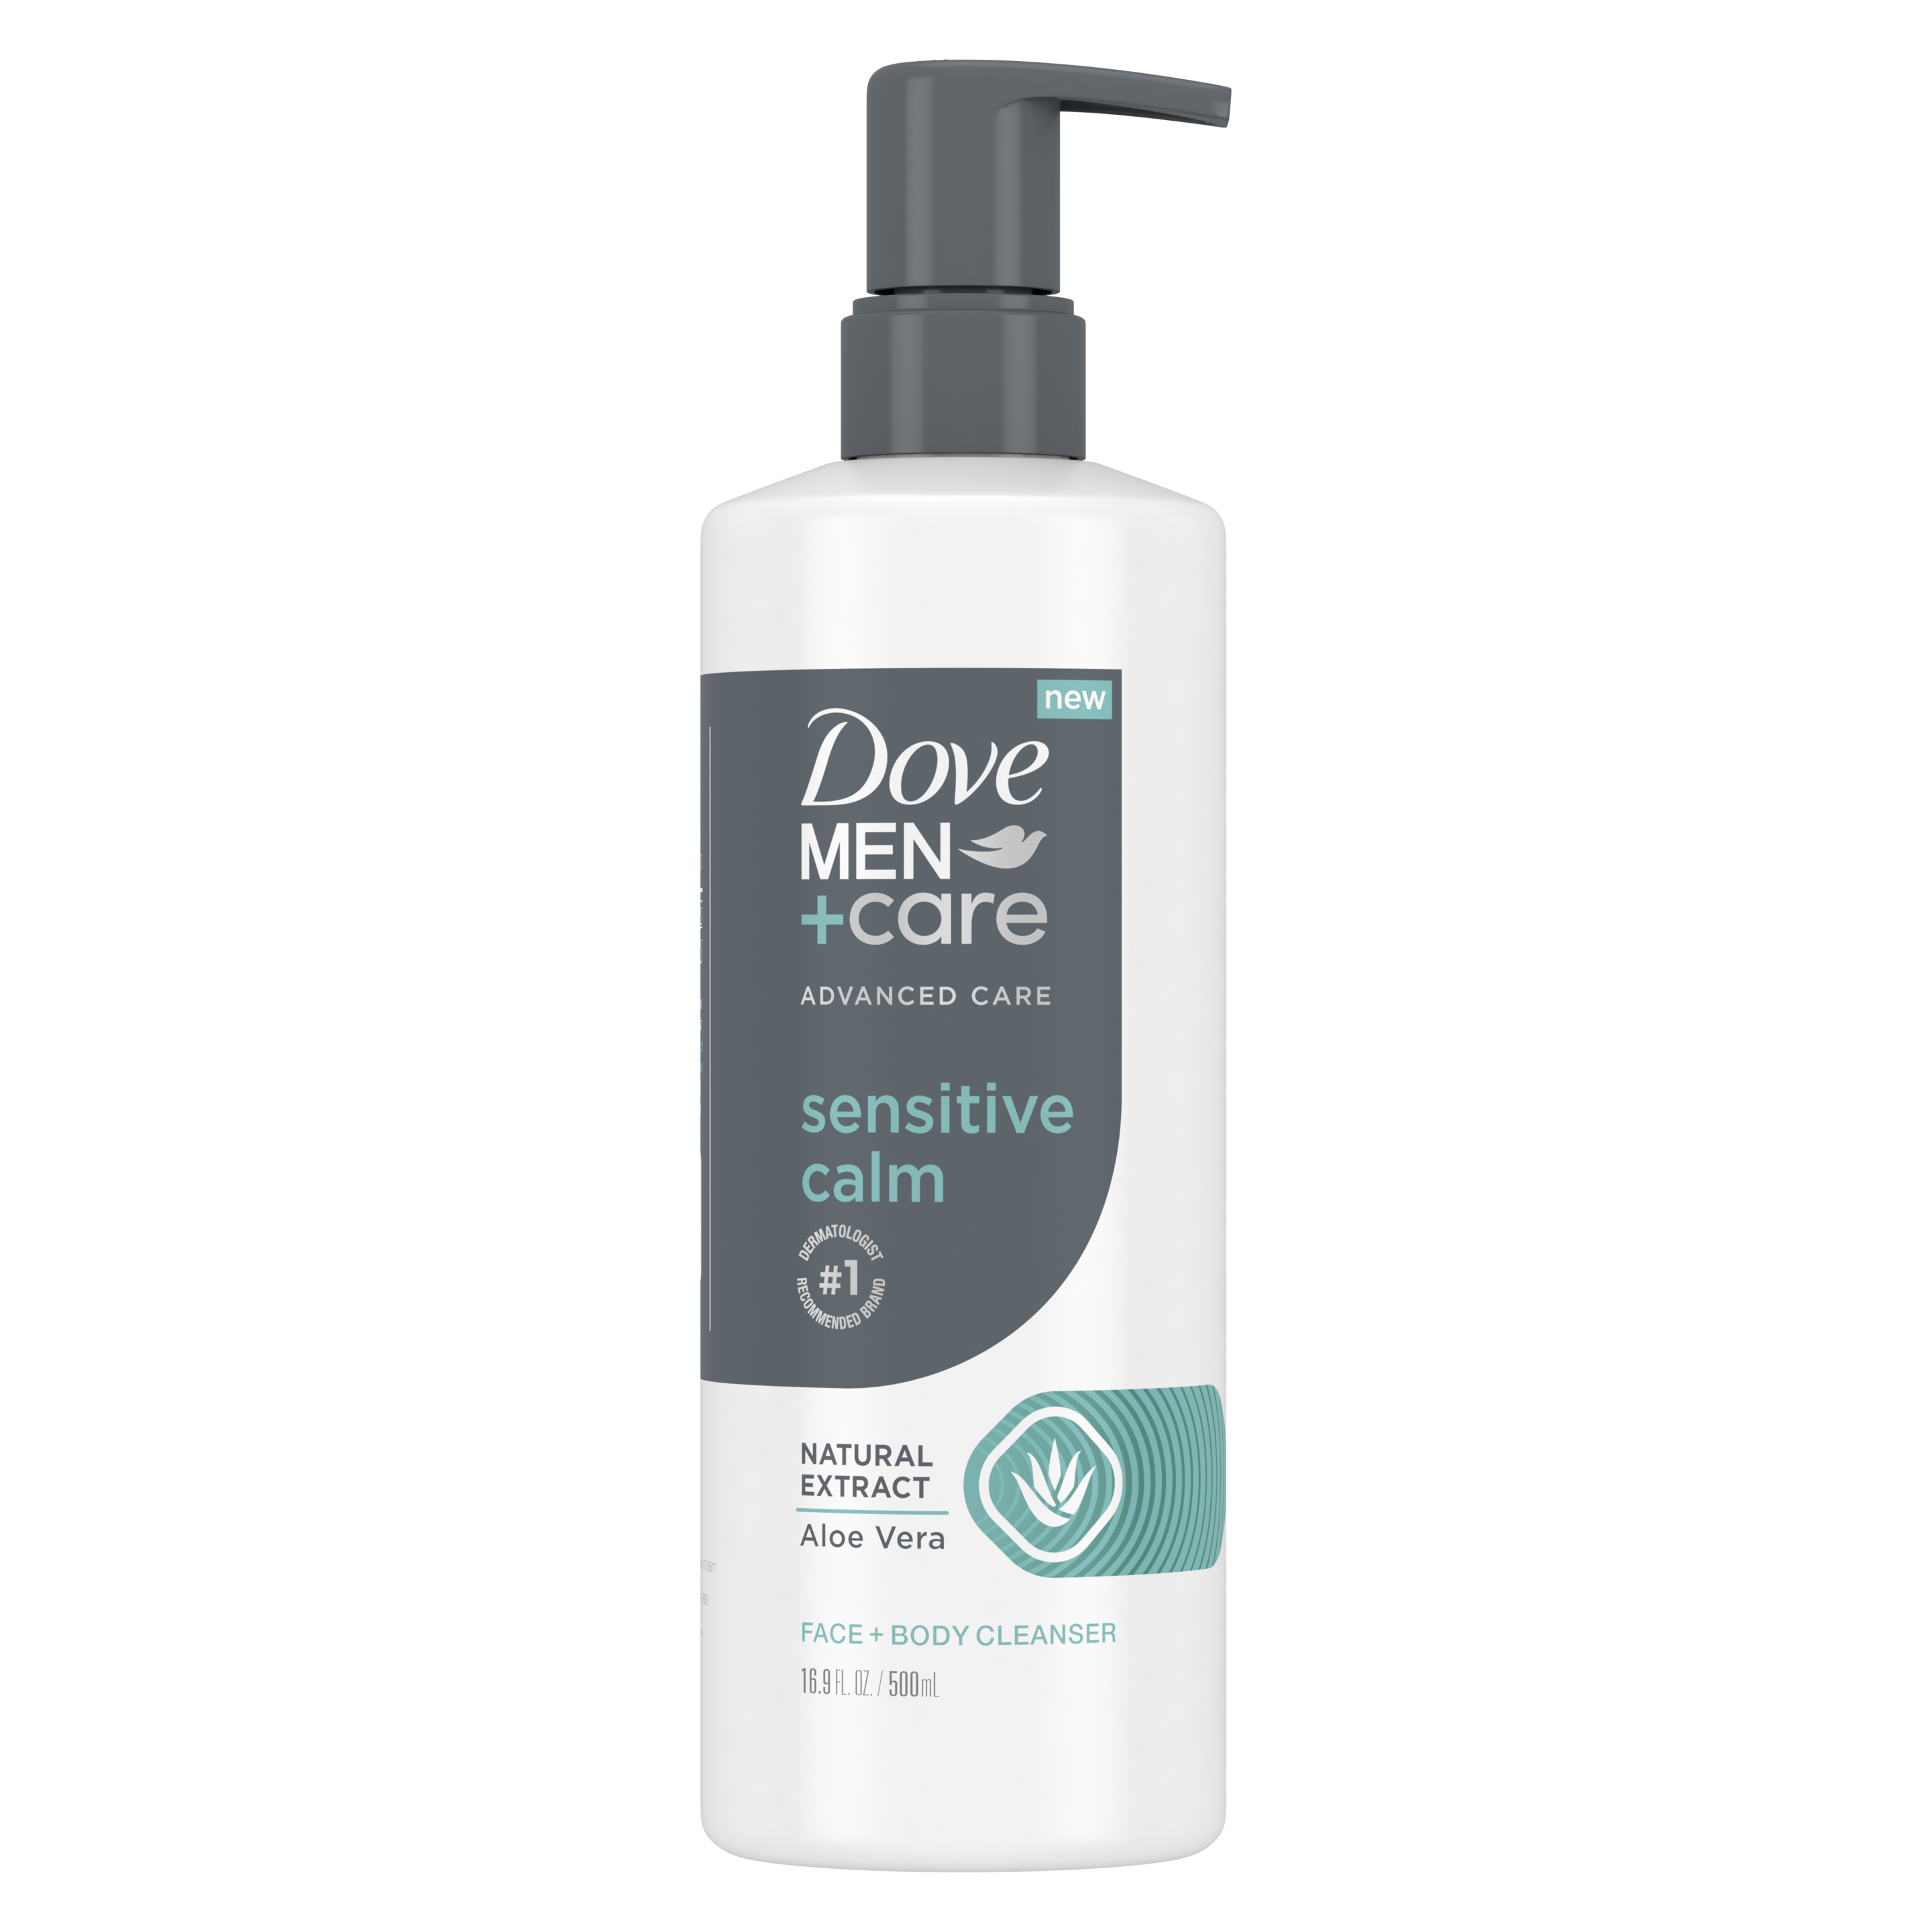 Dove Men+Care Advanced Care Sensitive Calm Face + Body Wash